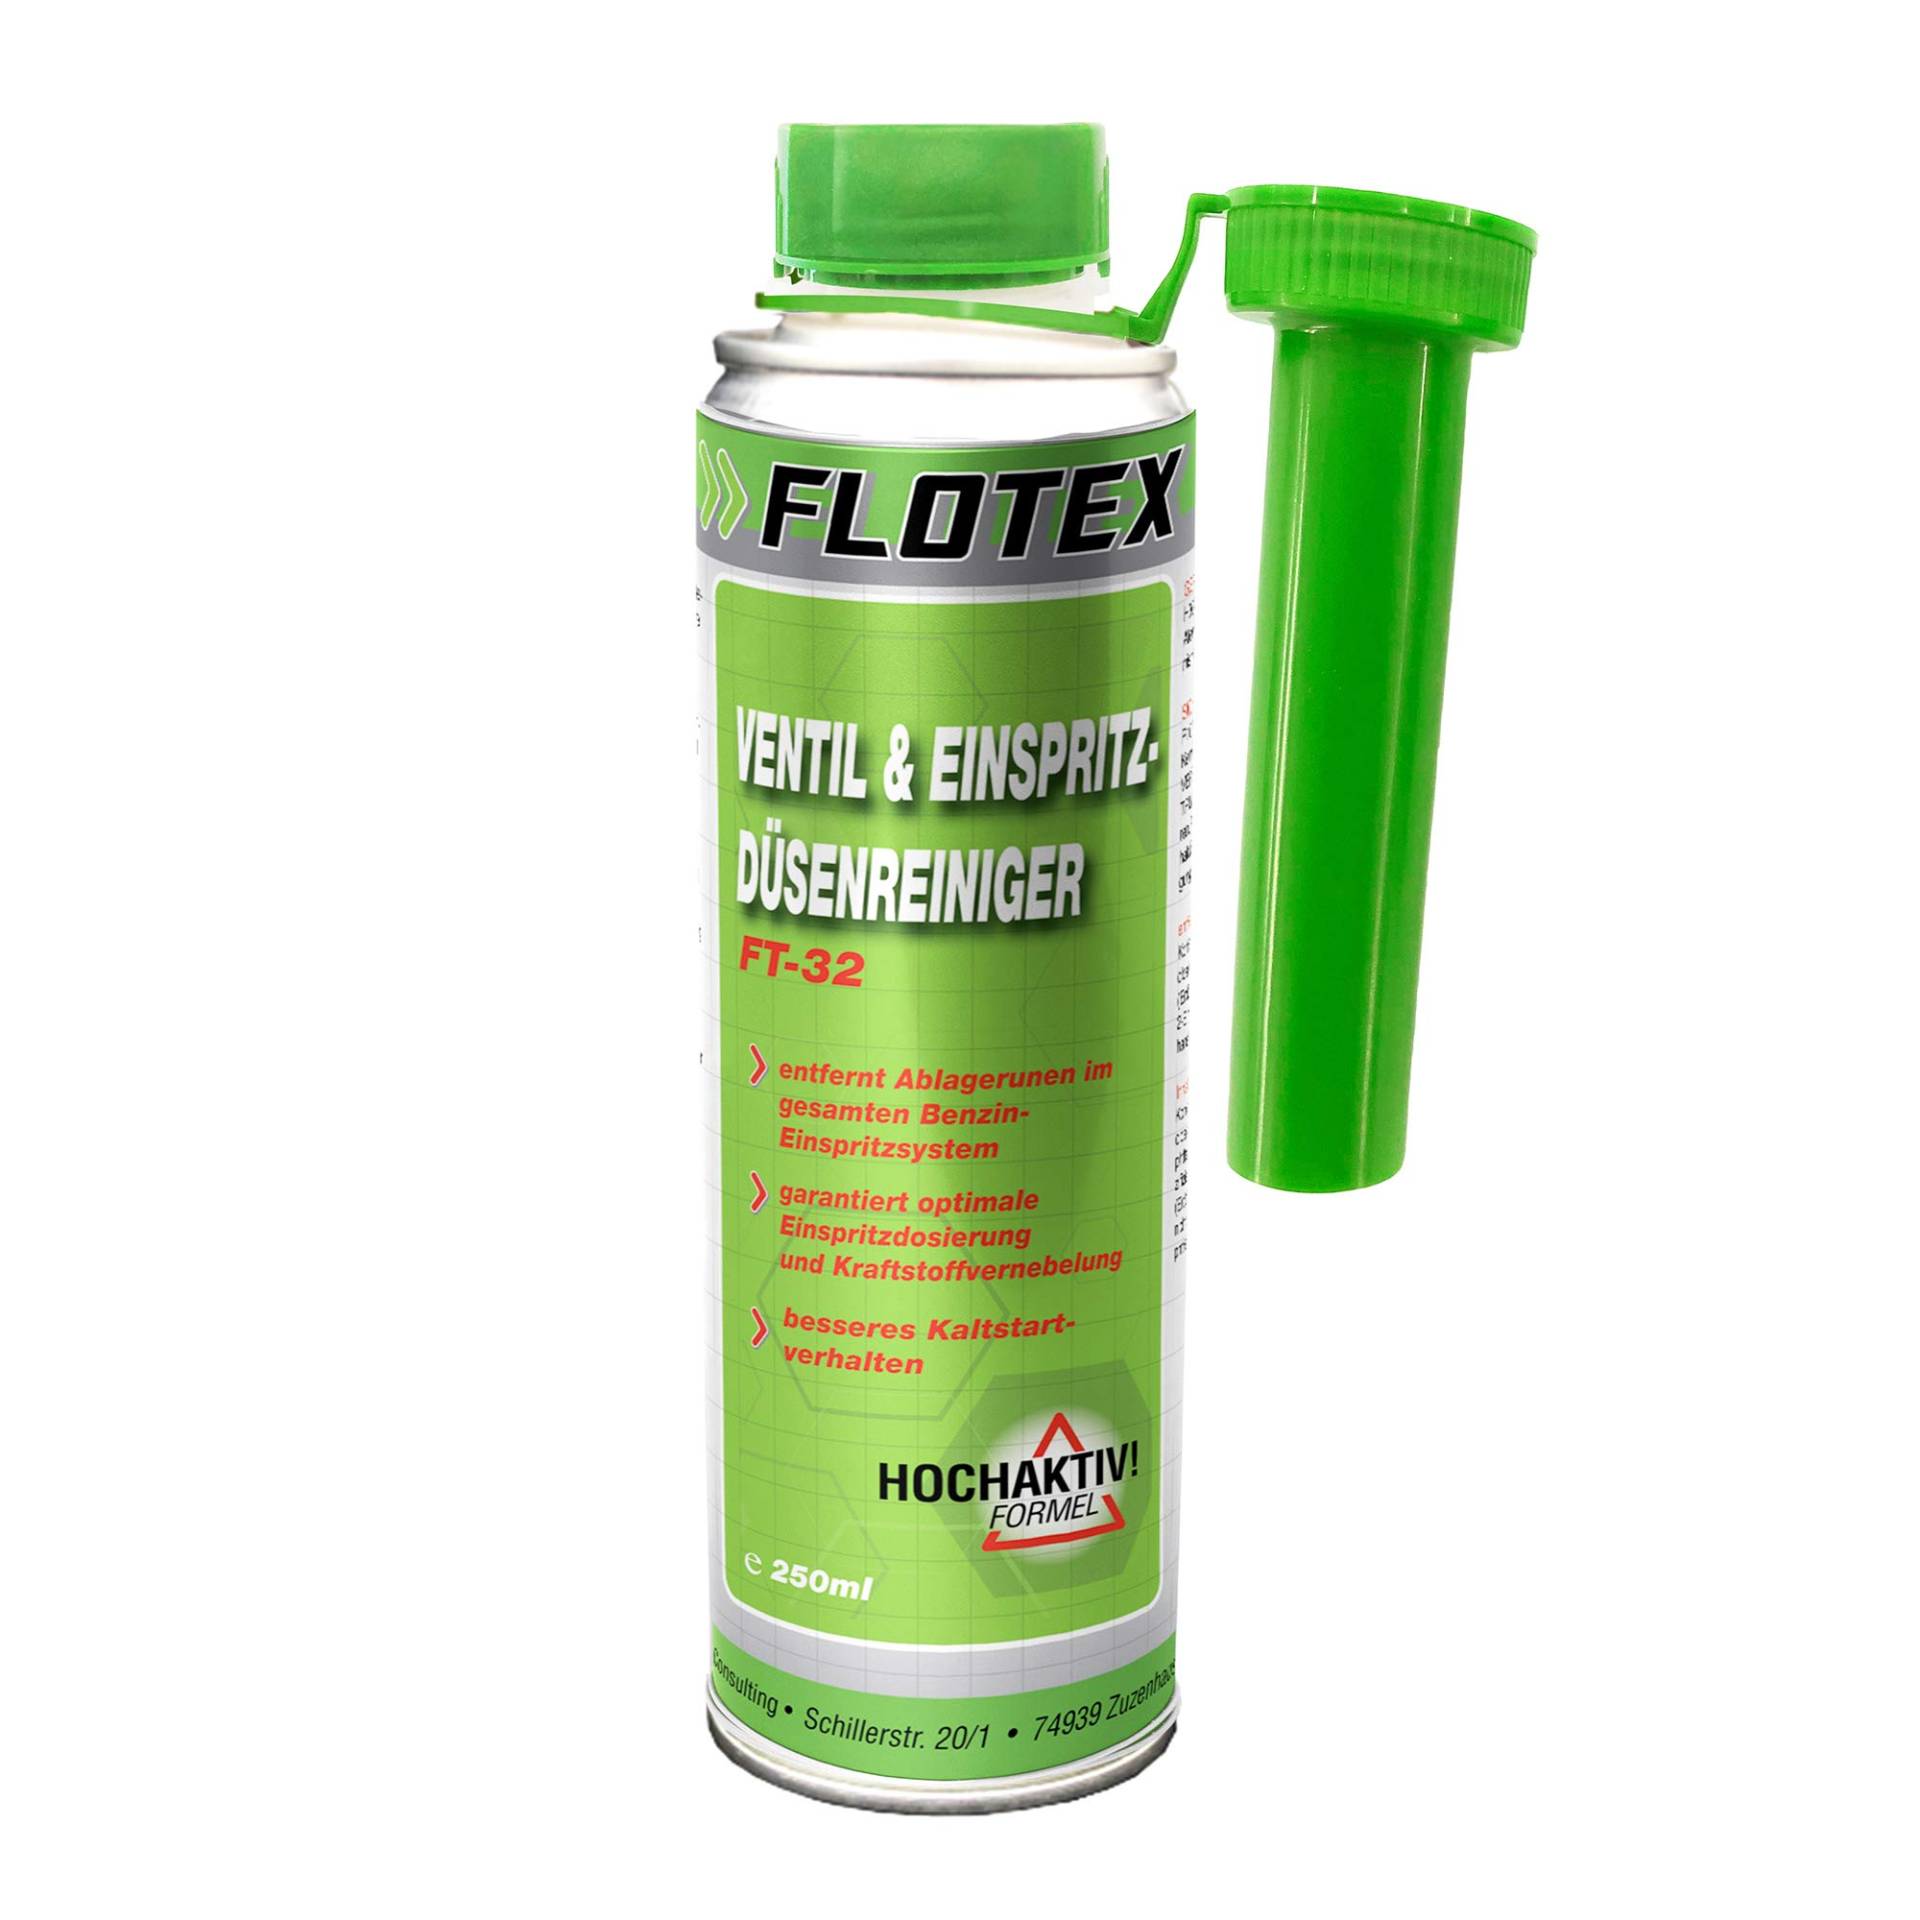 Flotex Ventil & Einspritzdüsenreiniger, 250ml Additiv entfernt Ablagerungen und reinigt Benzin Einspritzsystem von Flotex